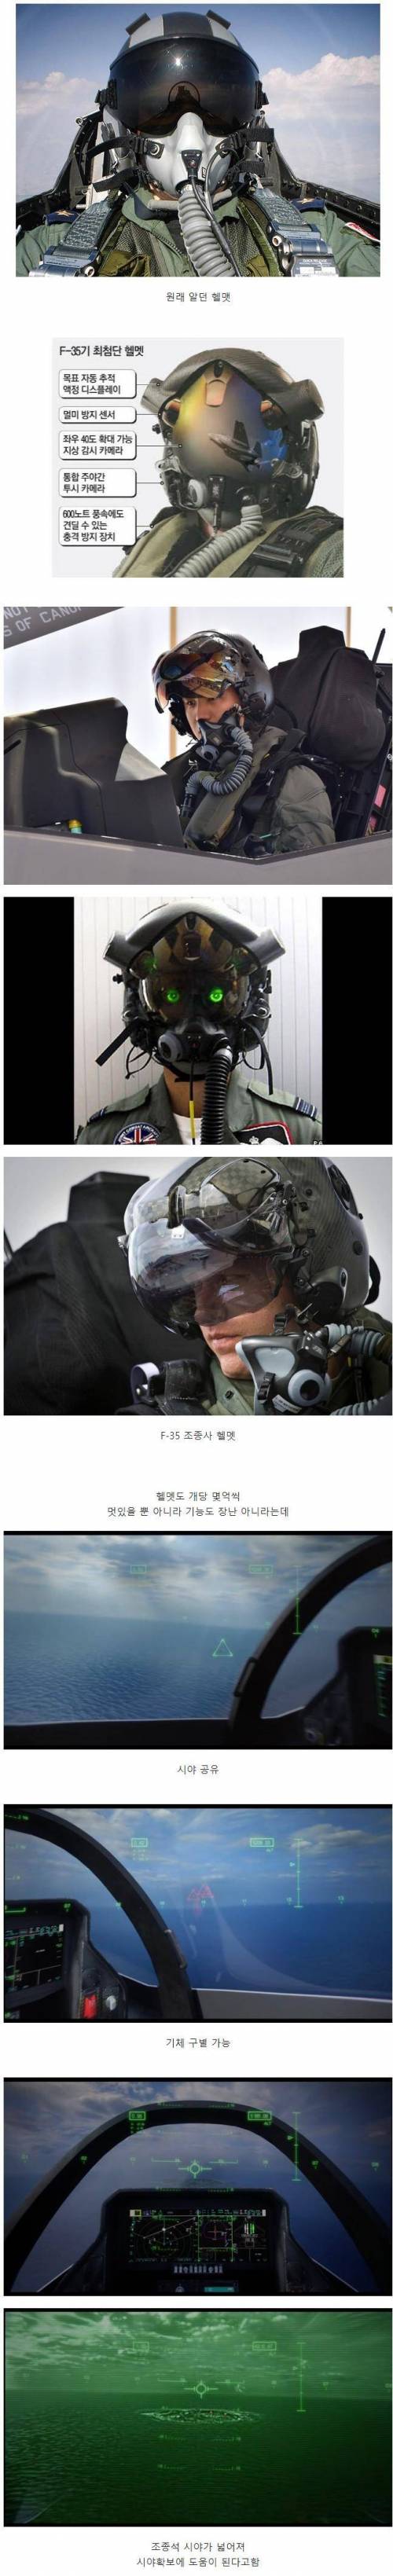 전투기 파일럿 헬멧의 진화.jpg